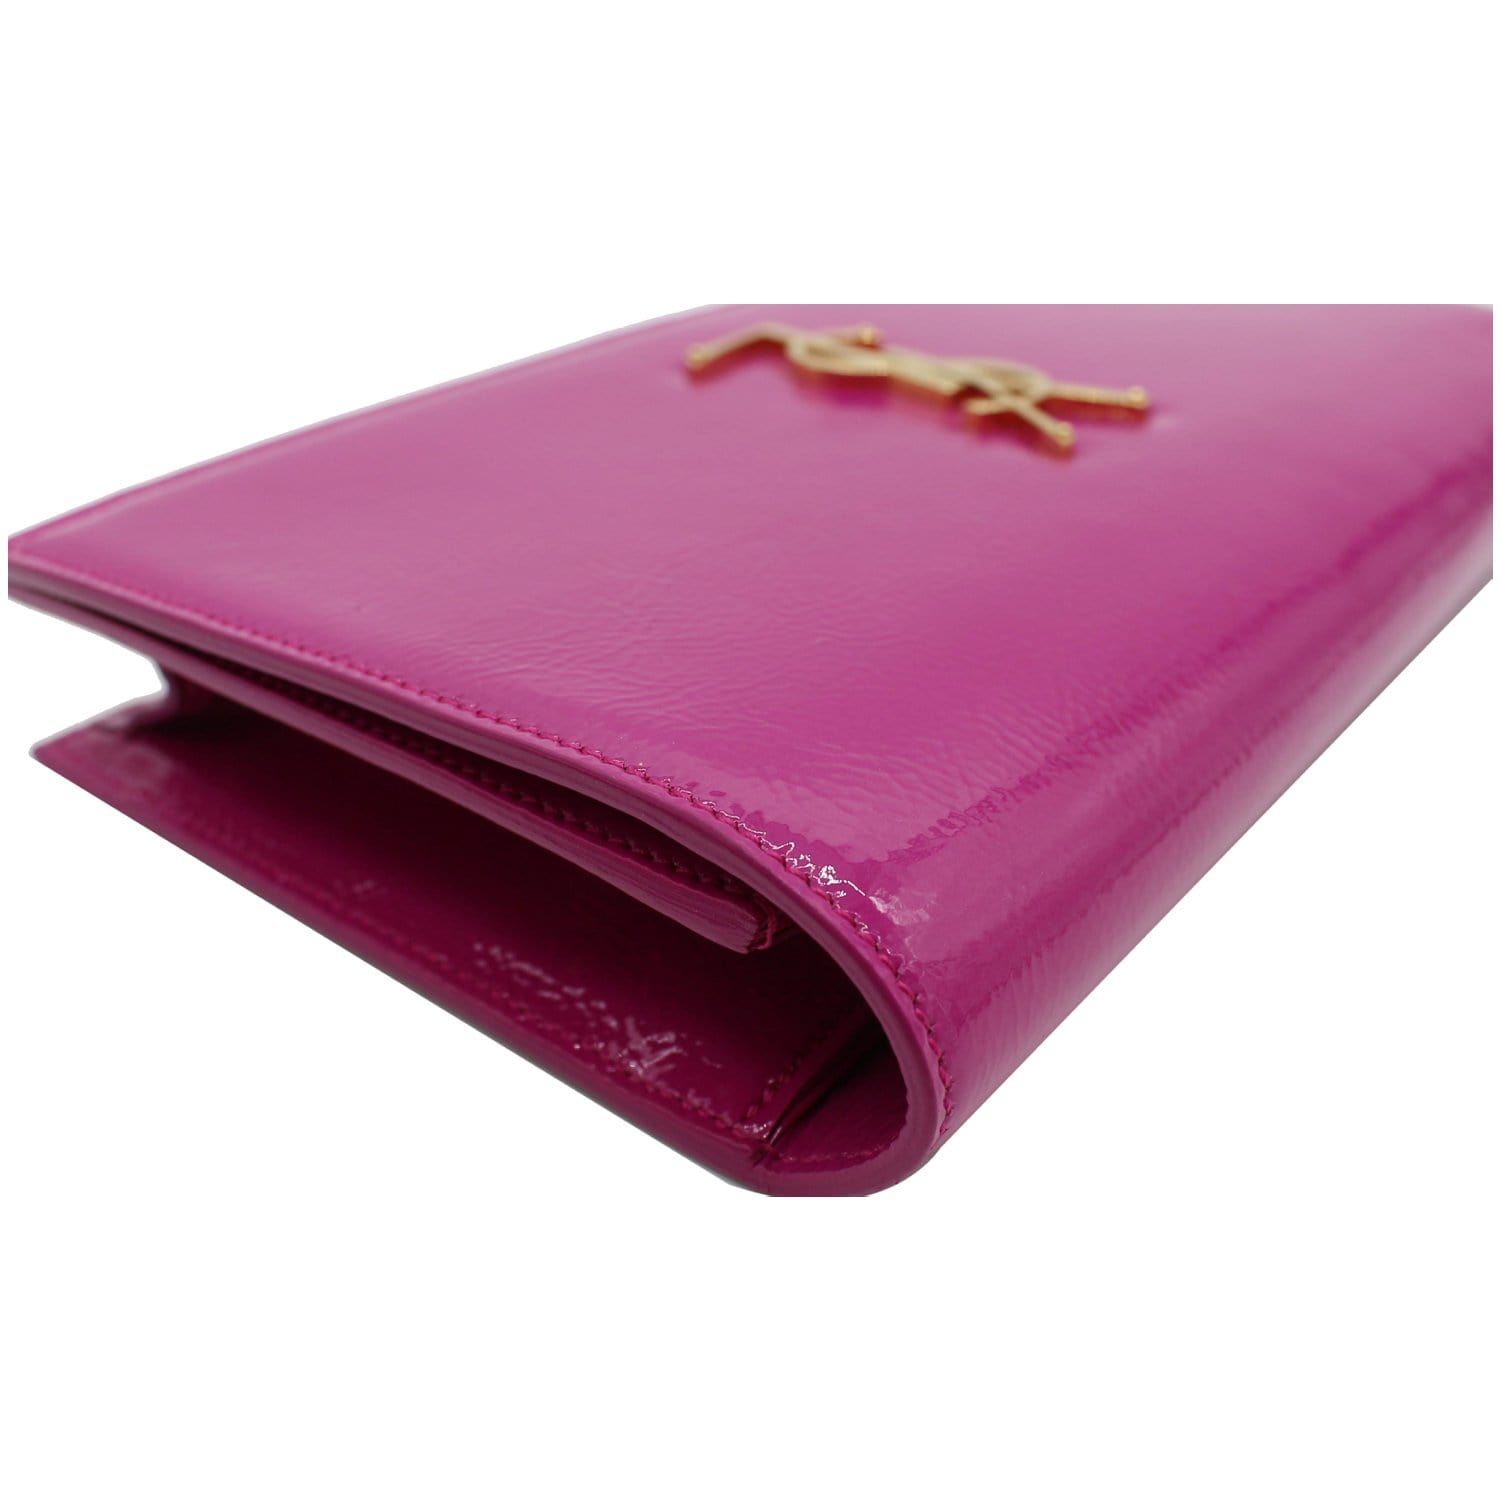 Belle de jour patent leather clutch bag Yves Saint Laurent Pink in